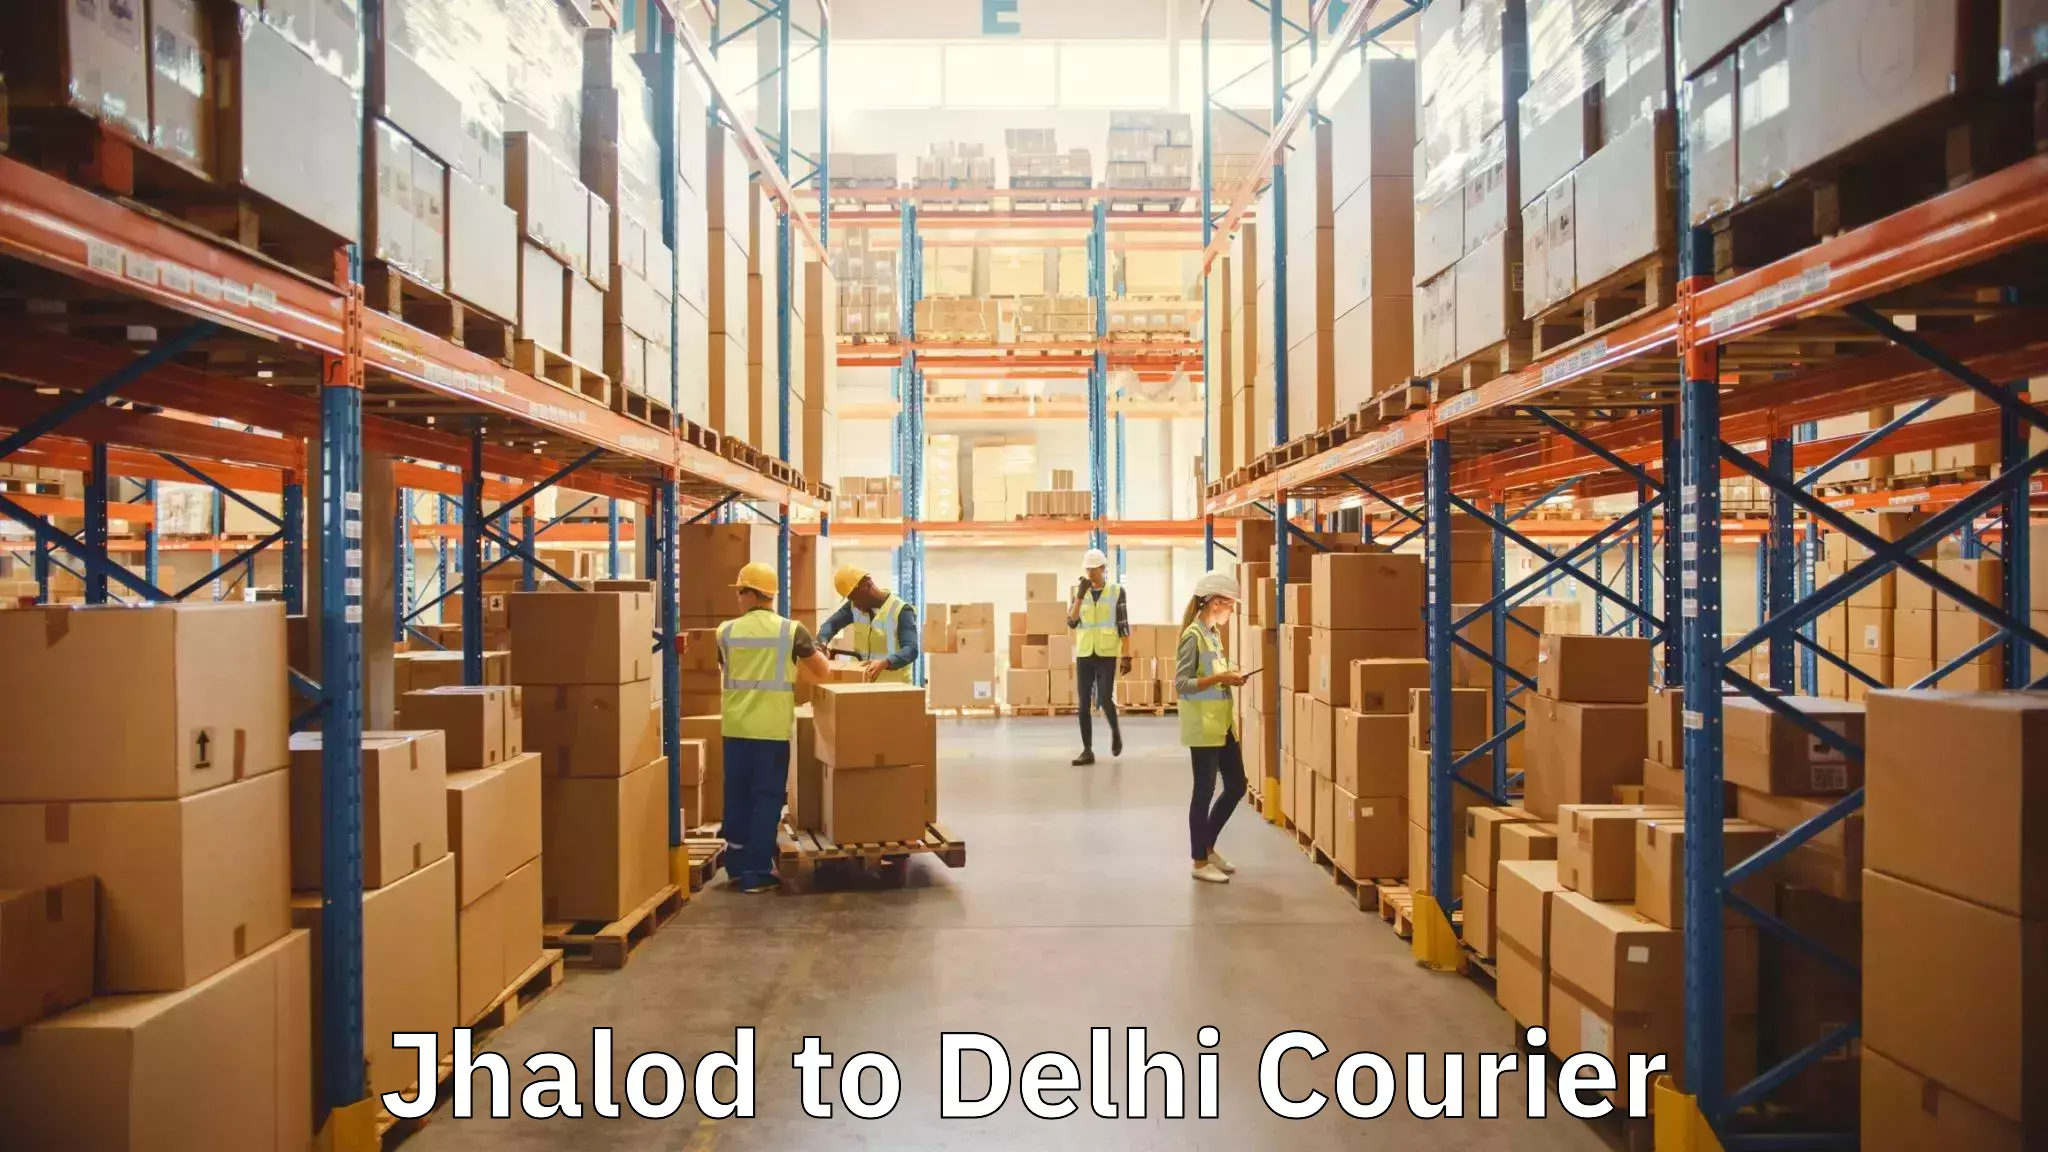 Household goods movers Jhalod to Delhi